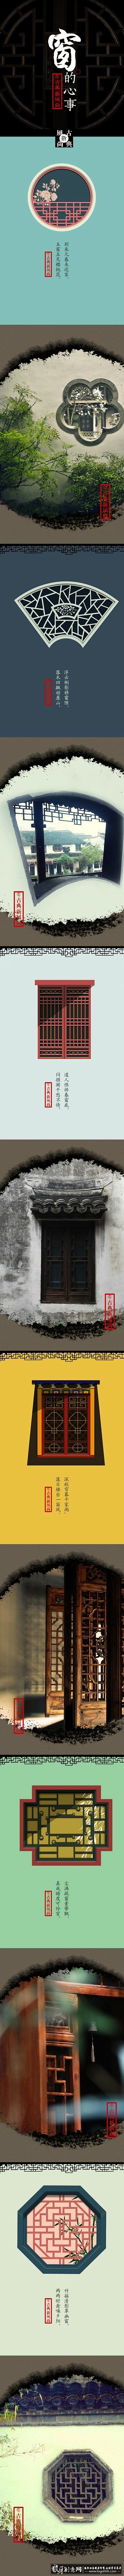 海报灵感 中国风-视觉欣赏 窗的心事 古...